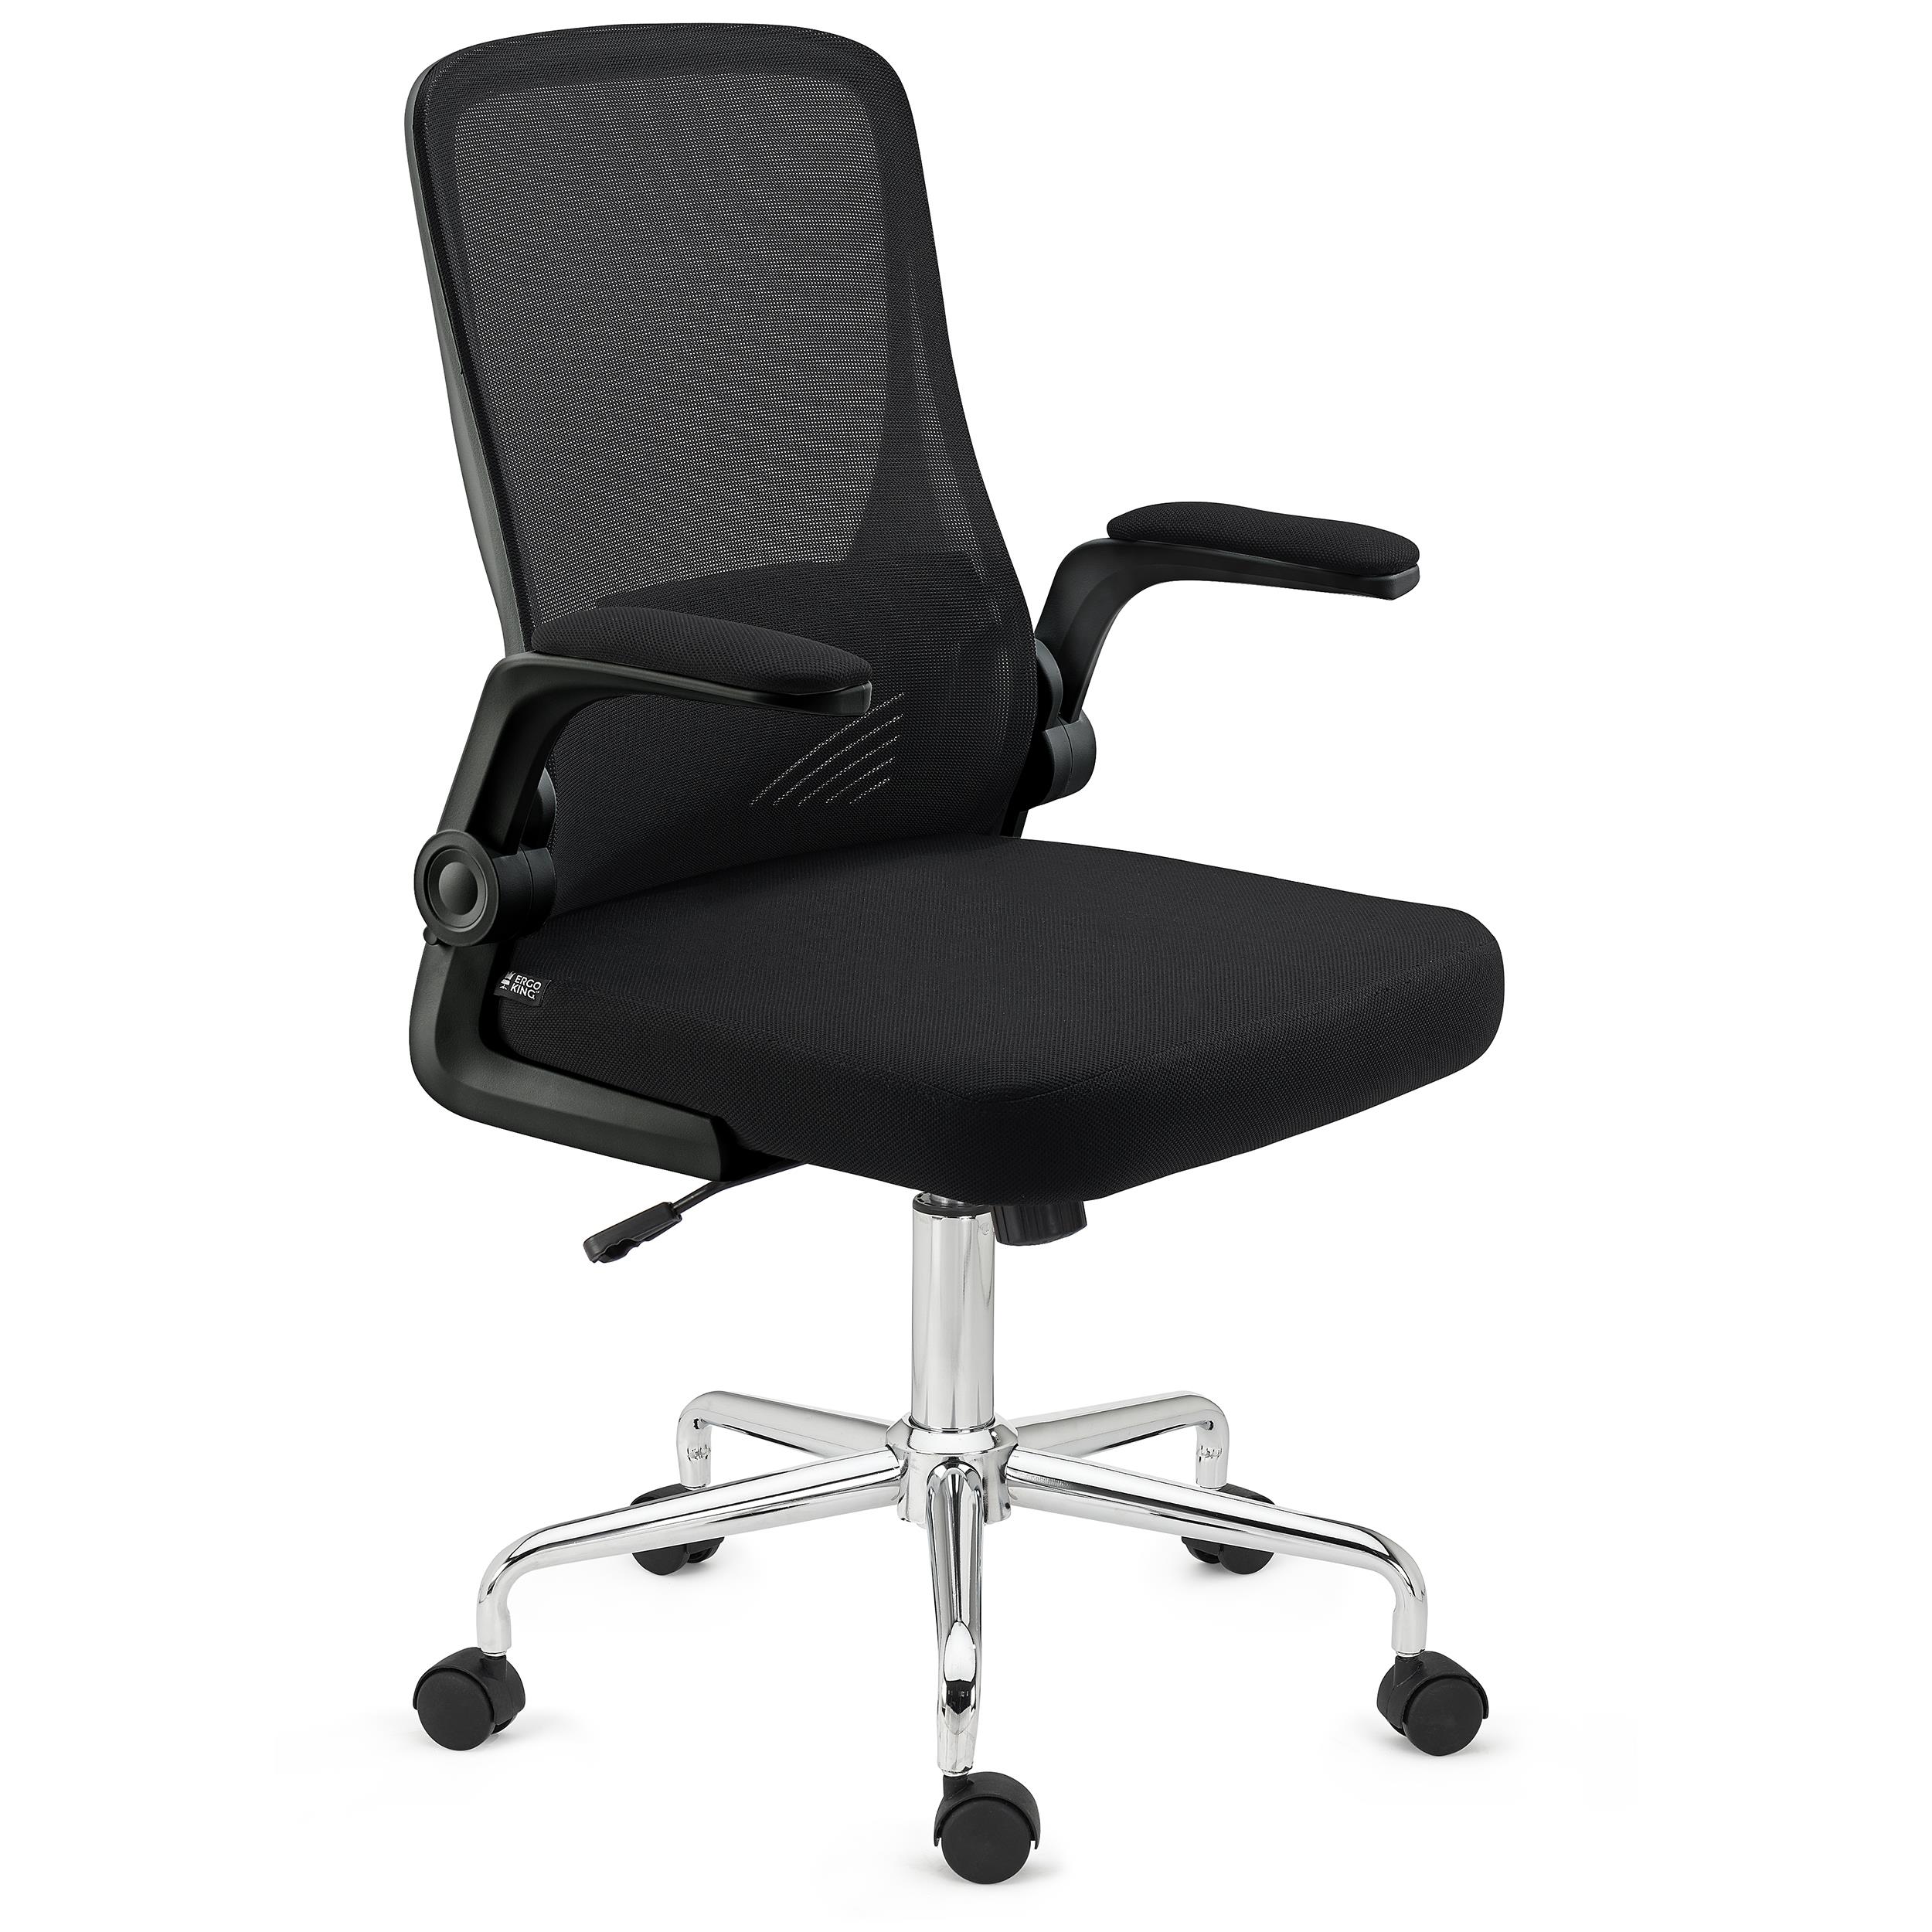 Ergonomischer Bürostuhl FOLD, klappbare Rückenlehne und Armlehnen, atmungsaktiver Netzstoff, Farbe Schwarz